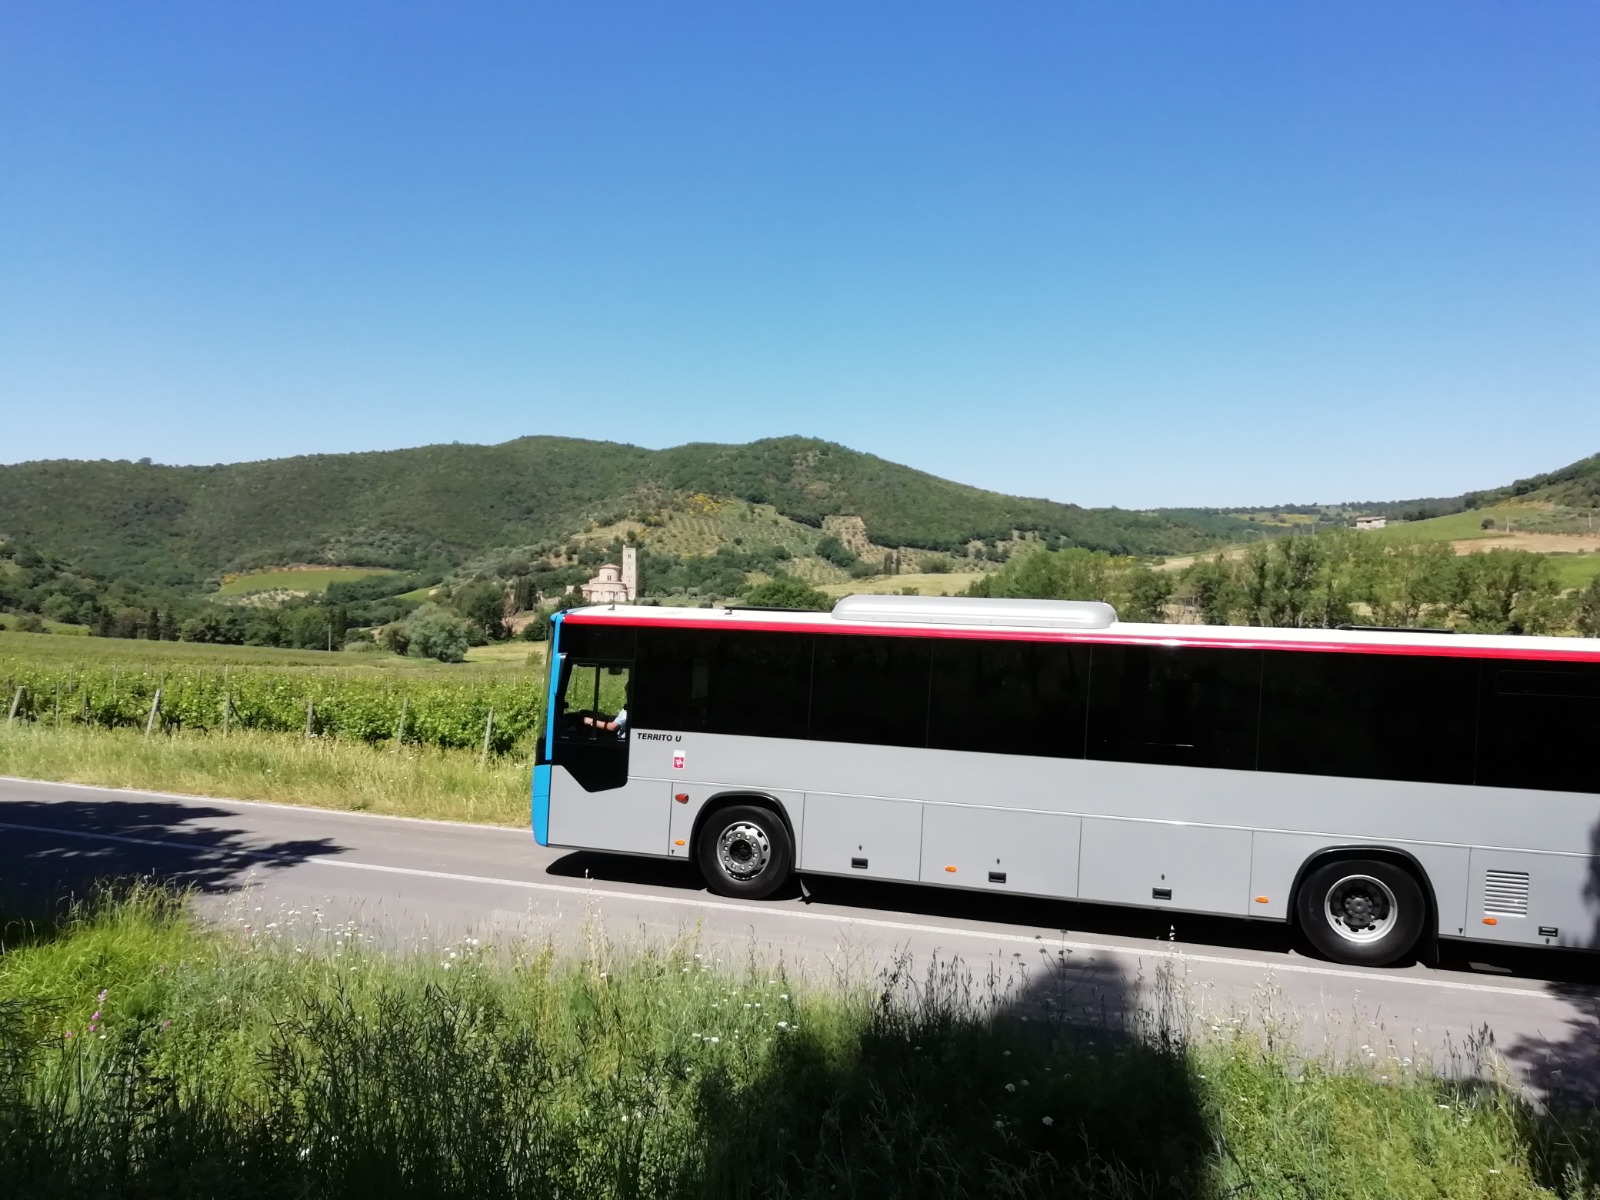 Servizi Tpl nel bacino di Arezzo: da lunedì 25 maggio torna completa l’offerta di servizi extraurbani non scolastici